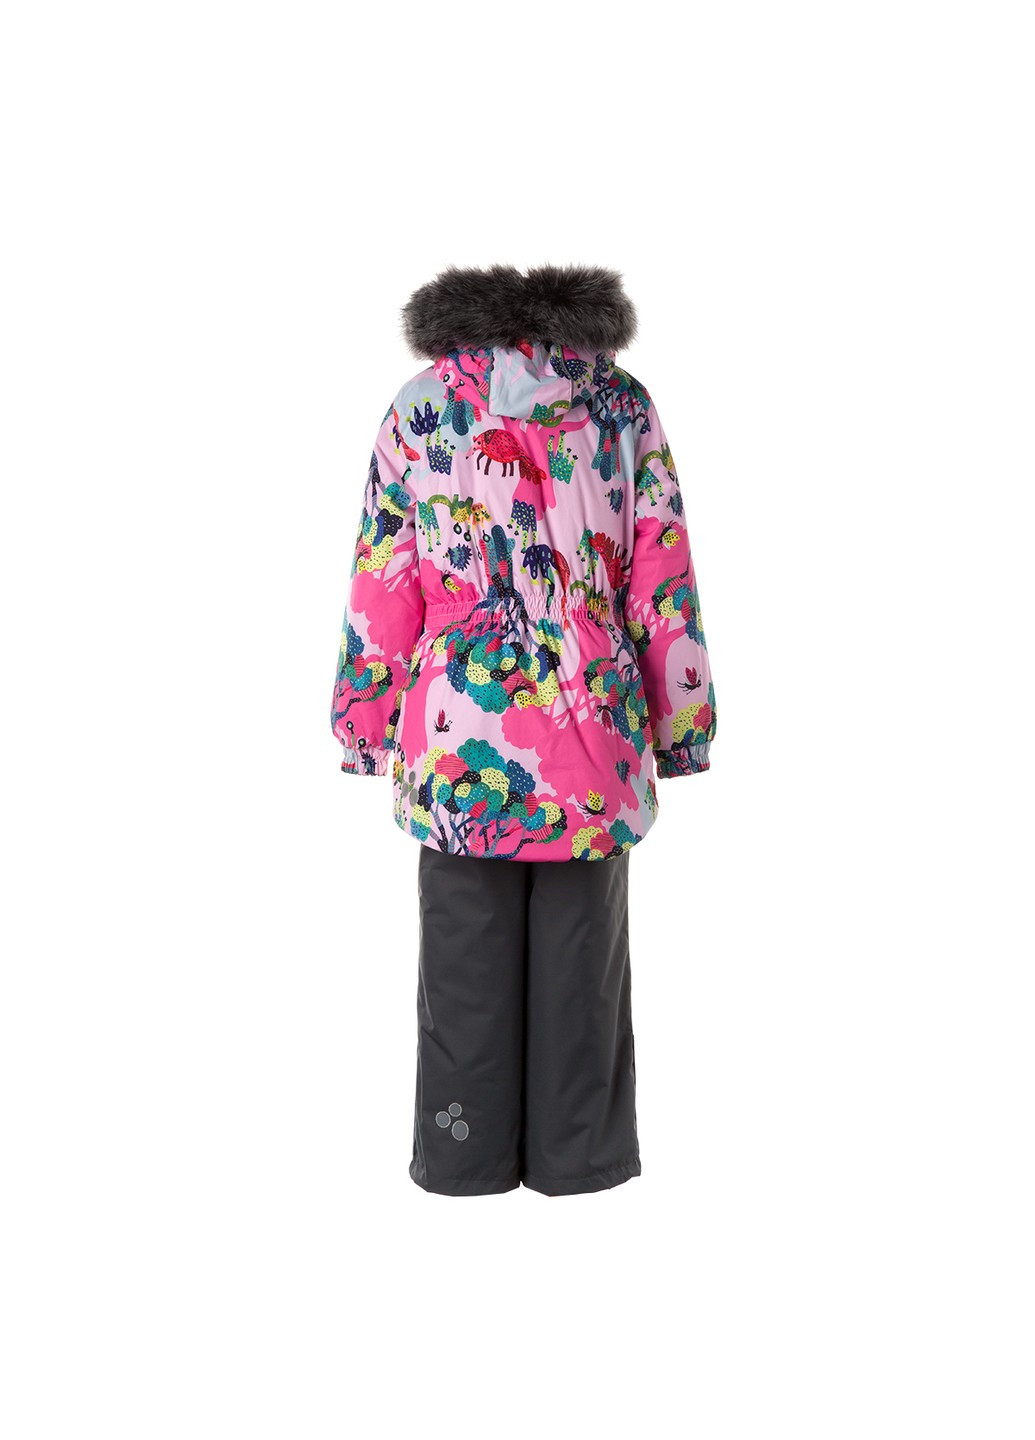 Рожевий зимній комплект зимовий (куртка + напівкомбінезон) renely 2 Huppa